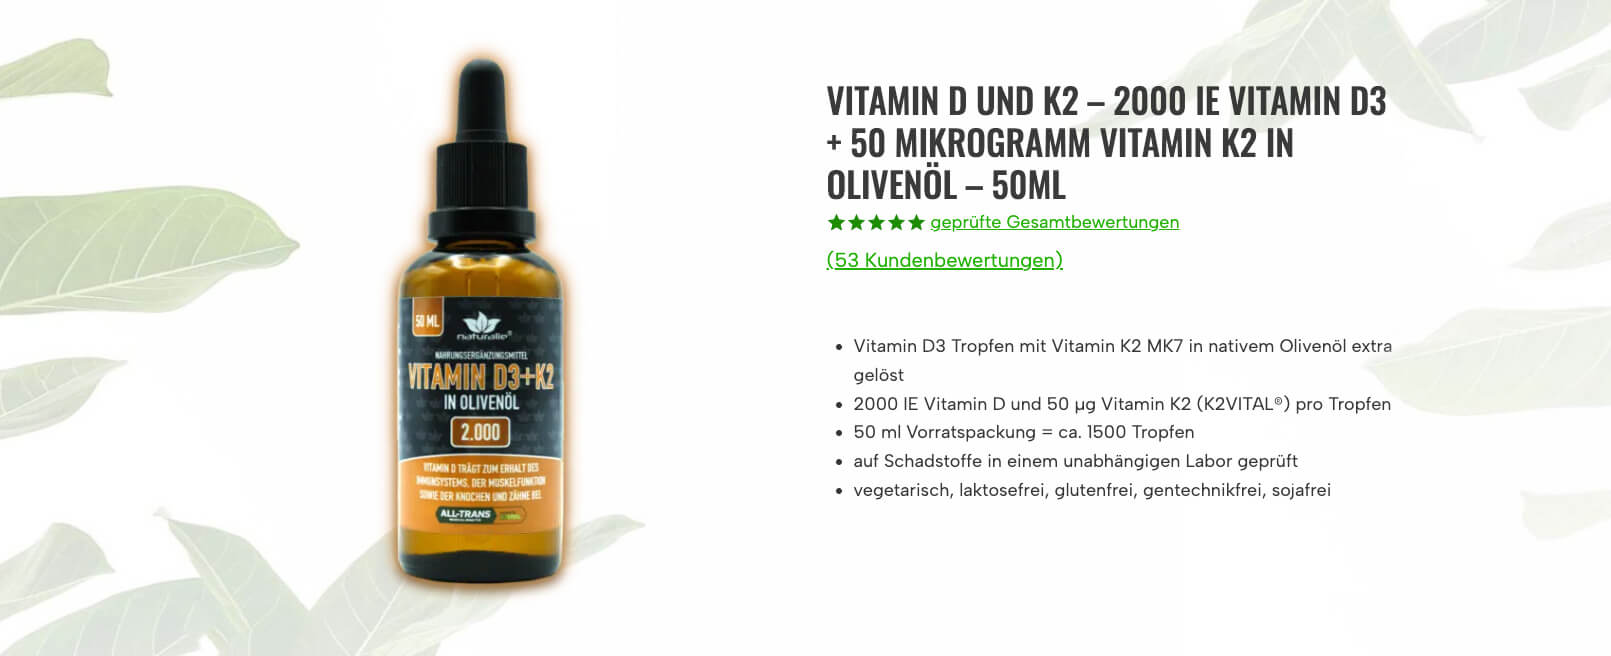 VitaminD3 und K2